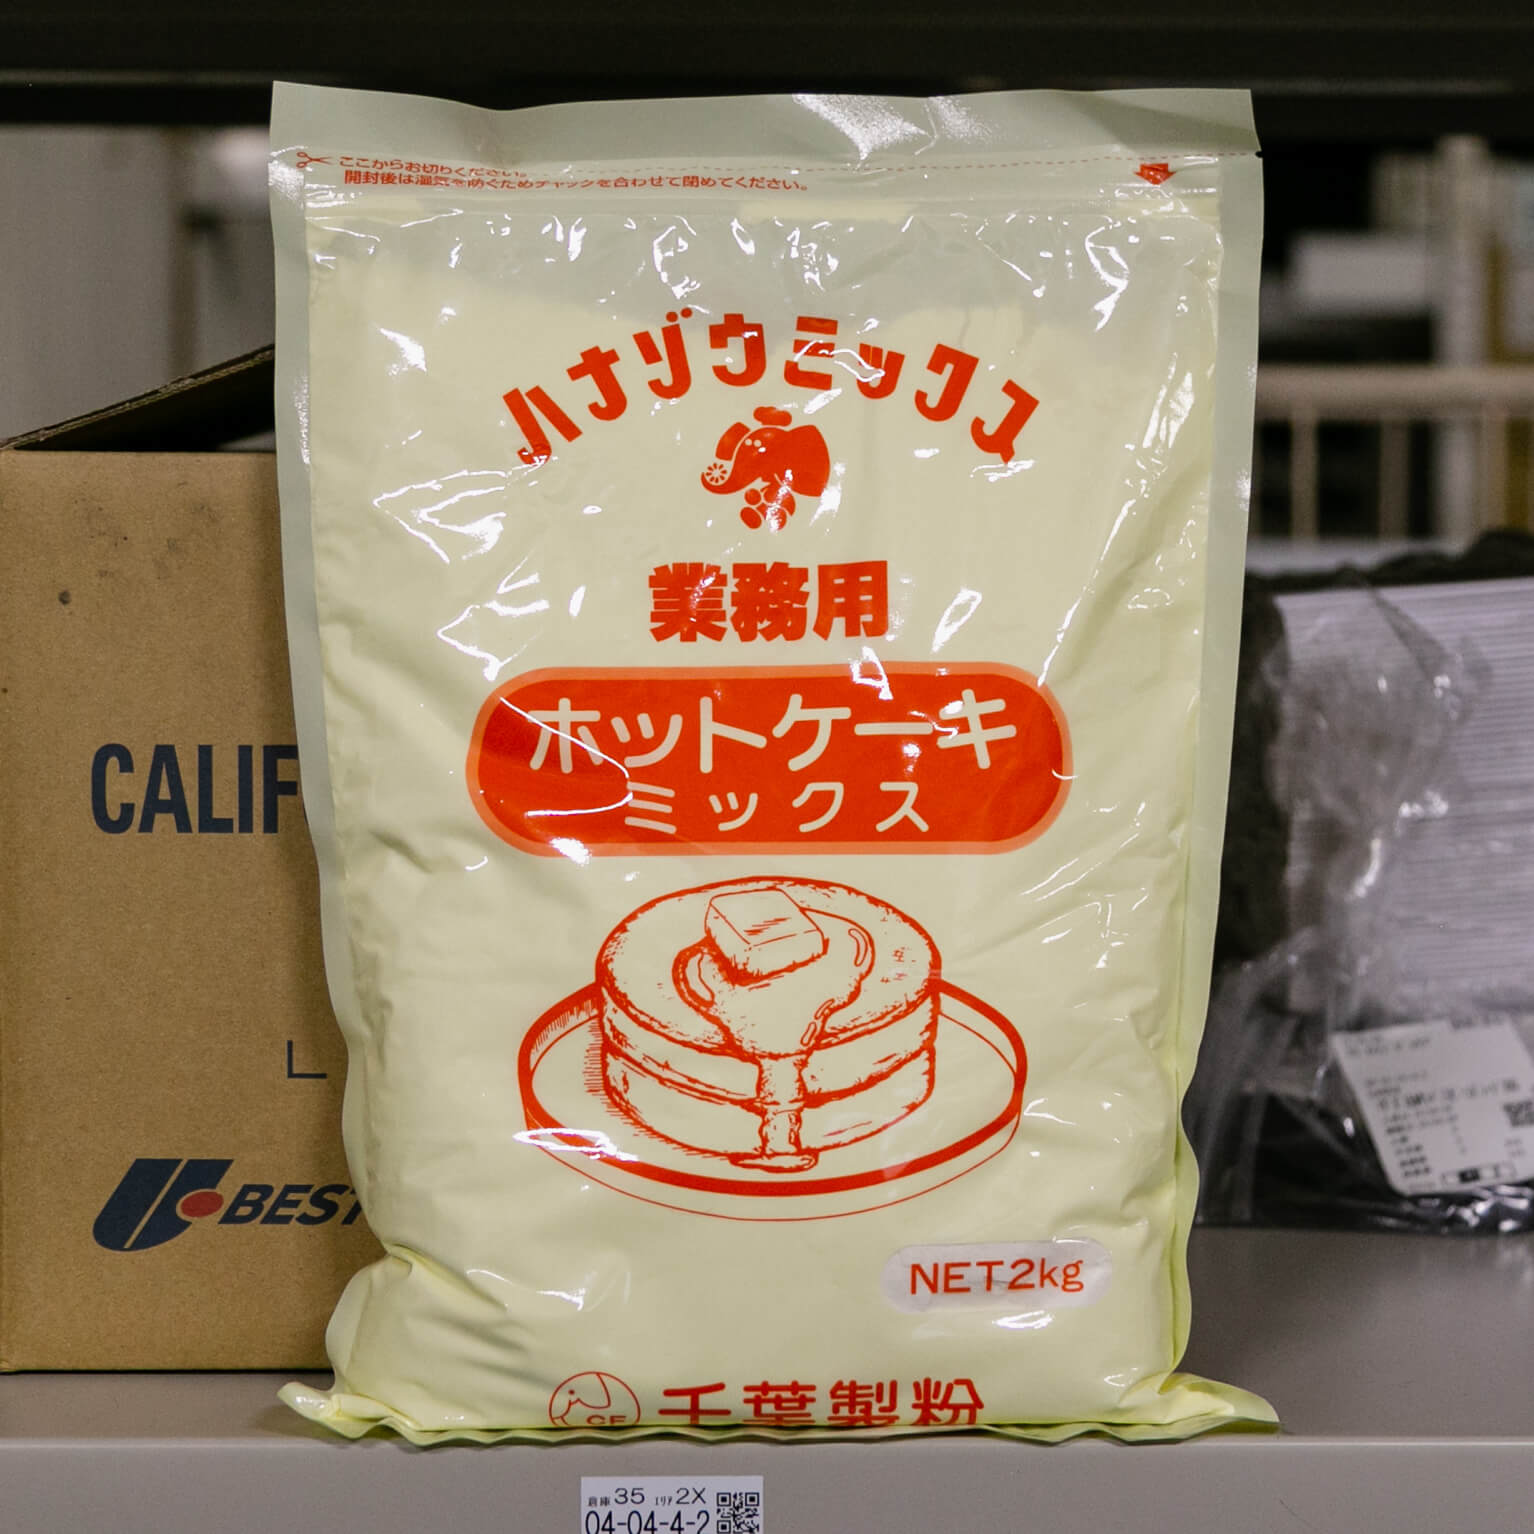 ホットケーキミックス 2kg : サンミックス / 千葉製粉 | スモール 